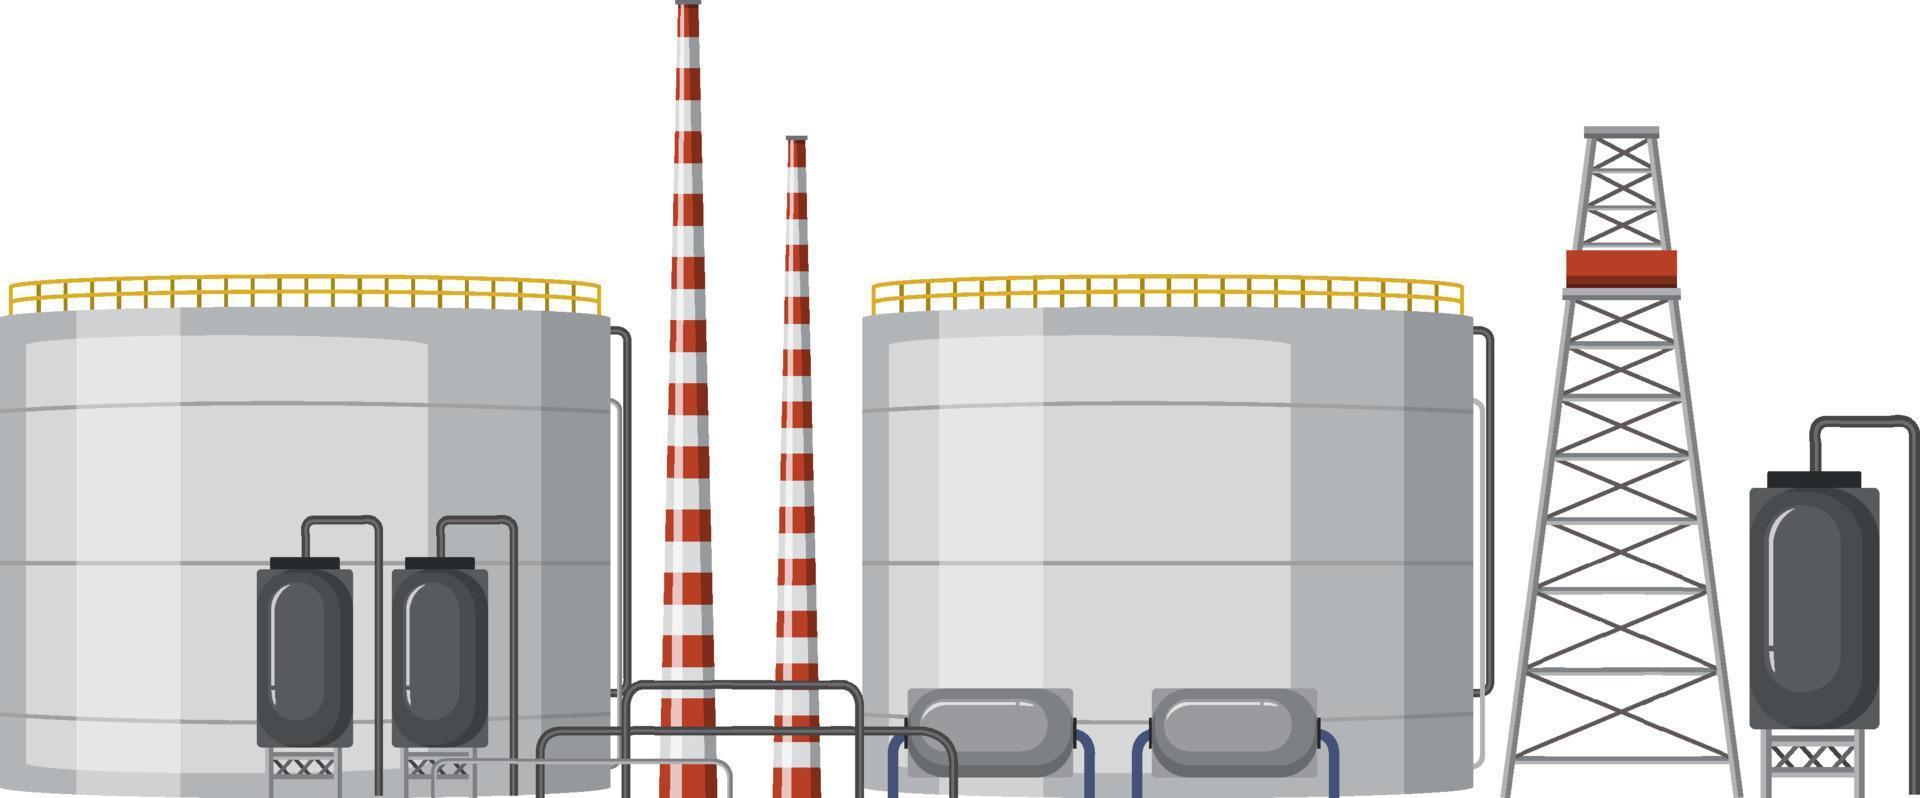 diseño de dibujos animados de fábrica de la industria petrolera vector